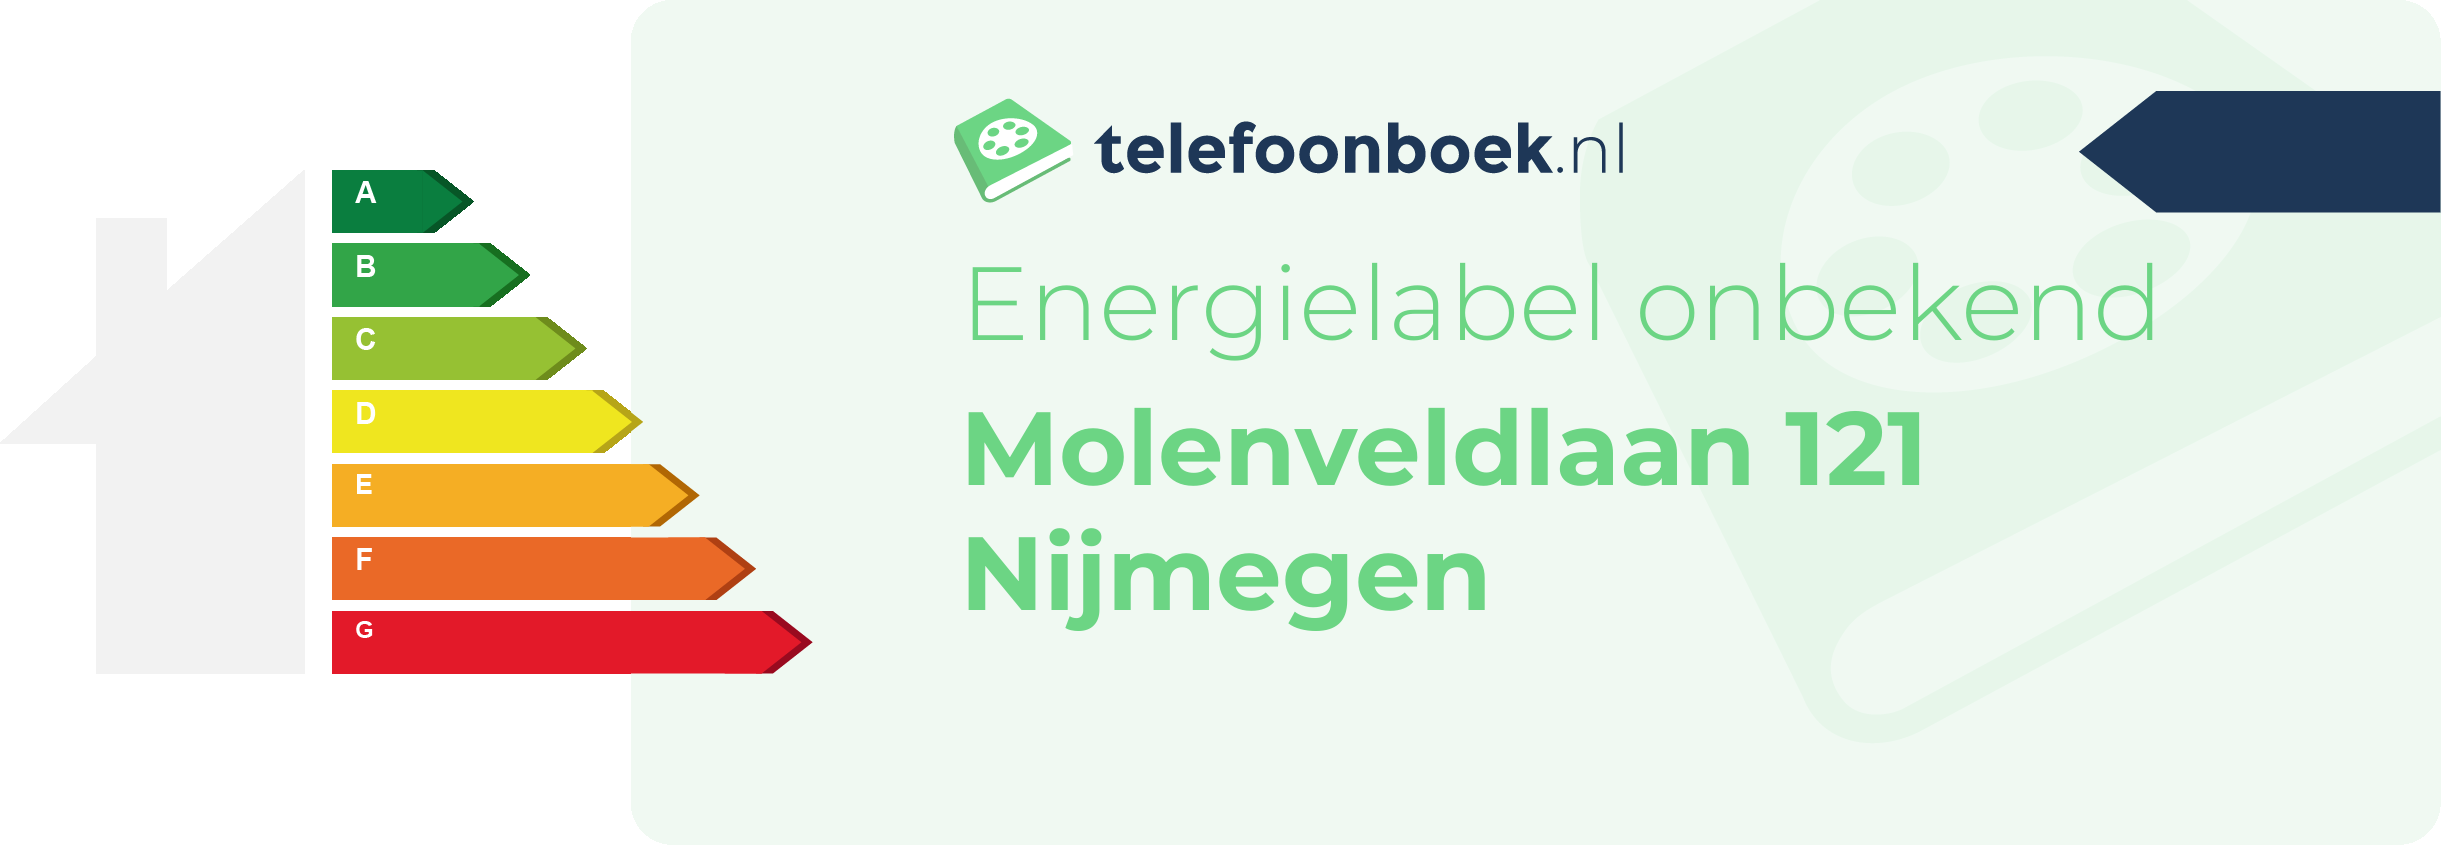 Energielabel Molenveldlaan 121 Nijmegen